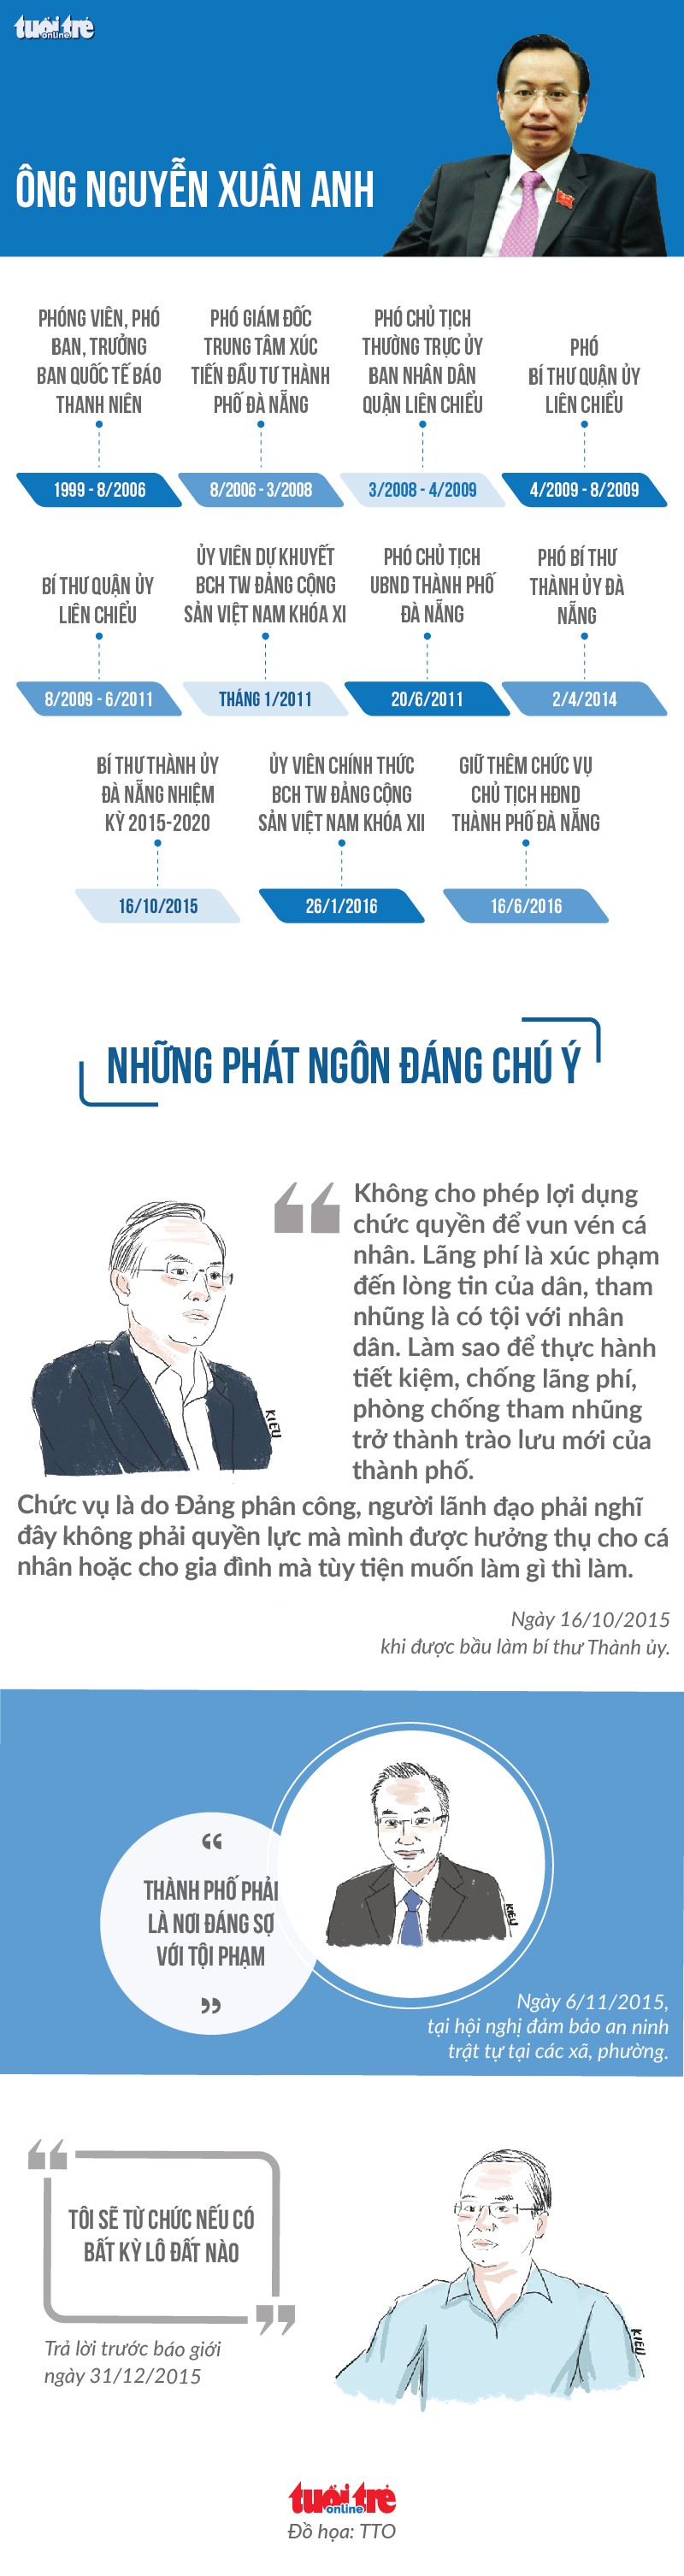 Uy ban KTTW: Vi pham cua Bi thu Da Nang Nguyen Xuan Anh nghiem trong-Hinh-3